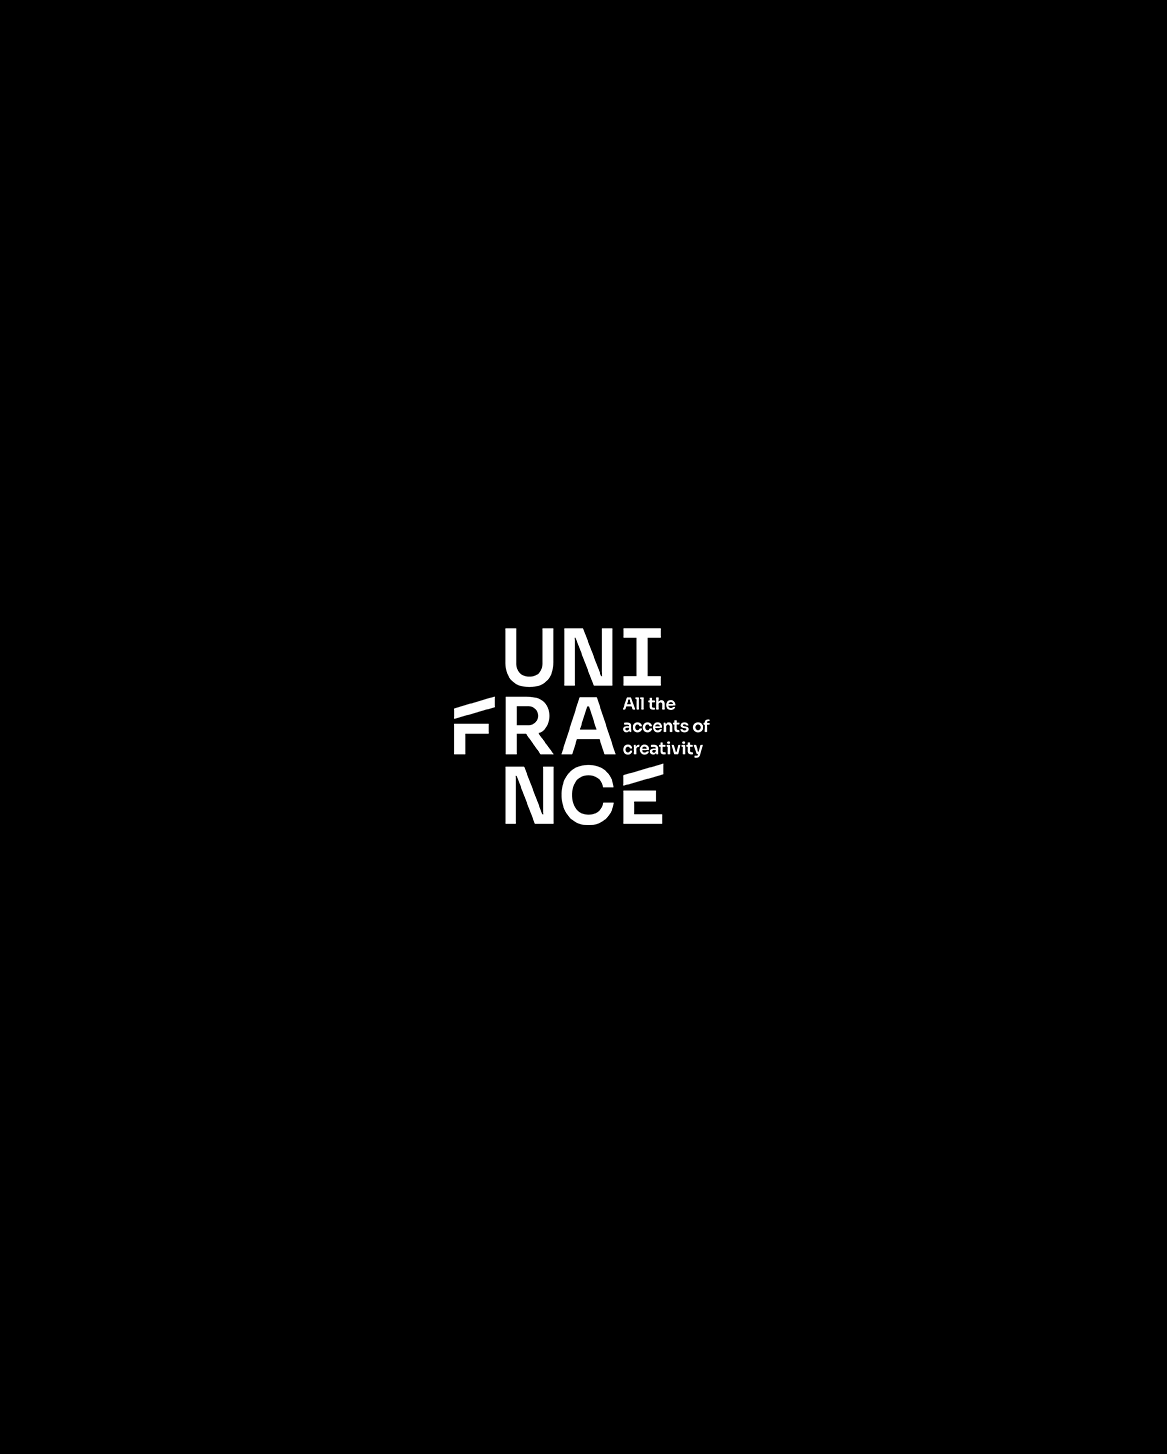 Festival du film francophone de Vienne - 2017